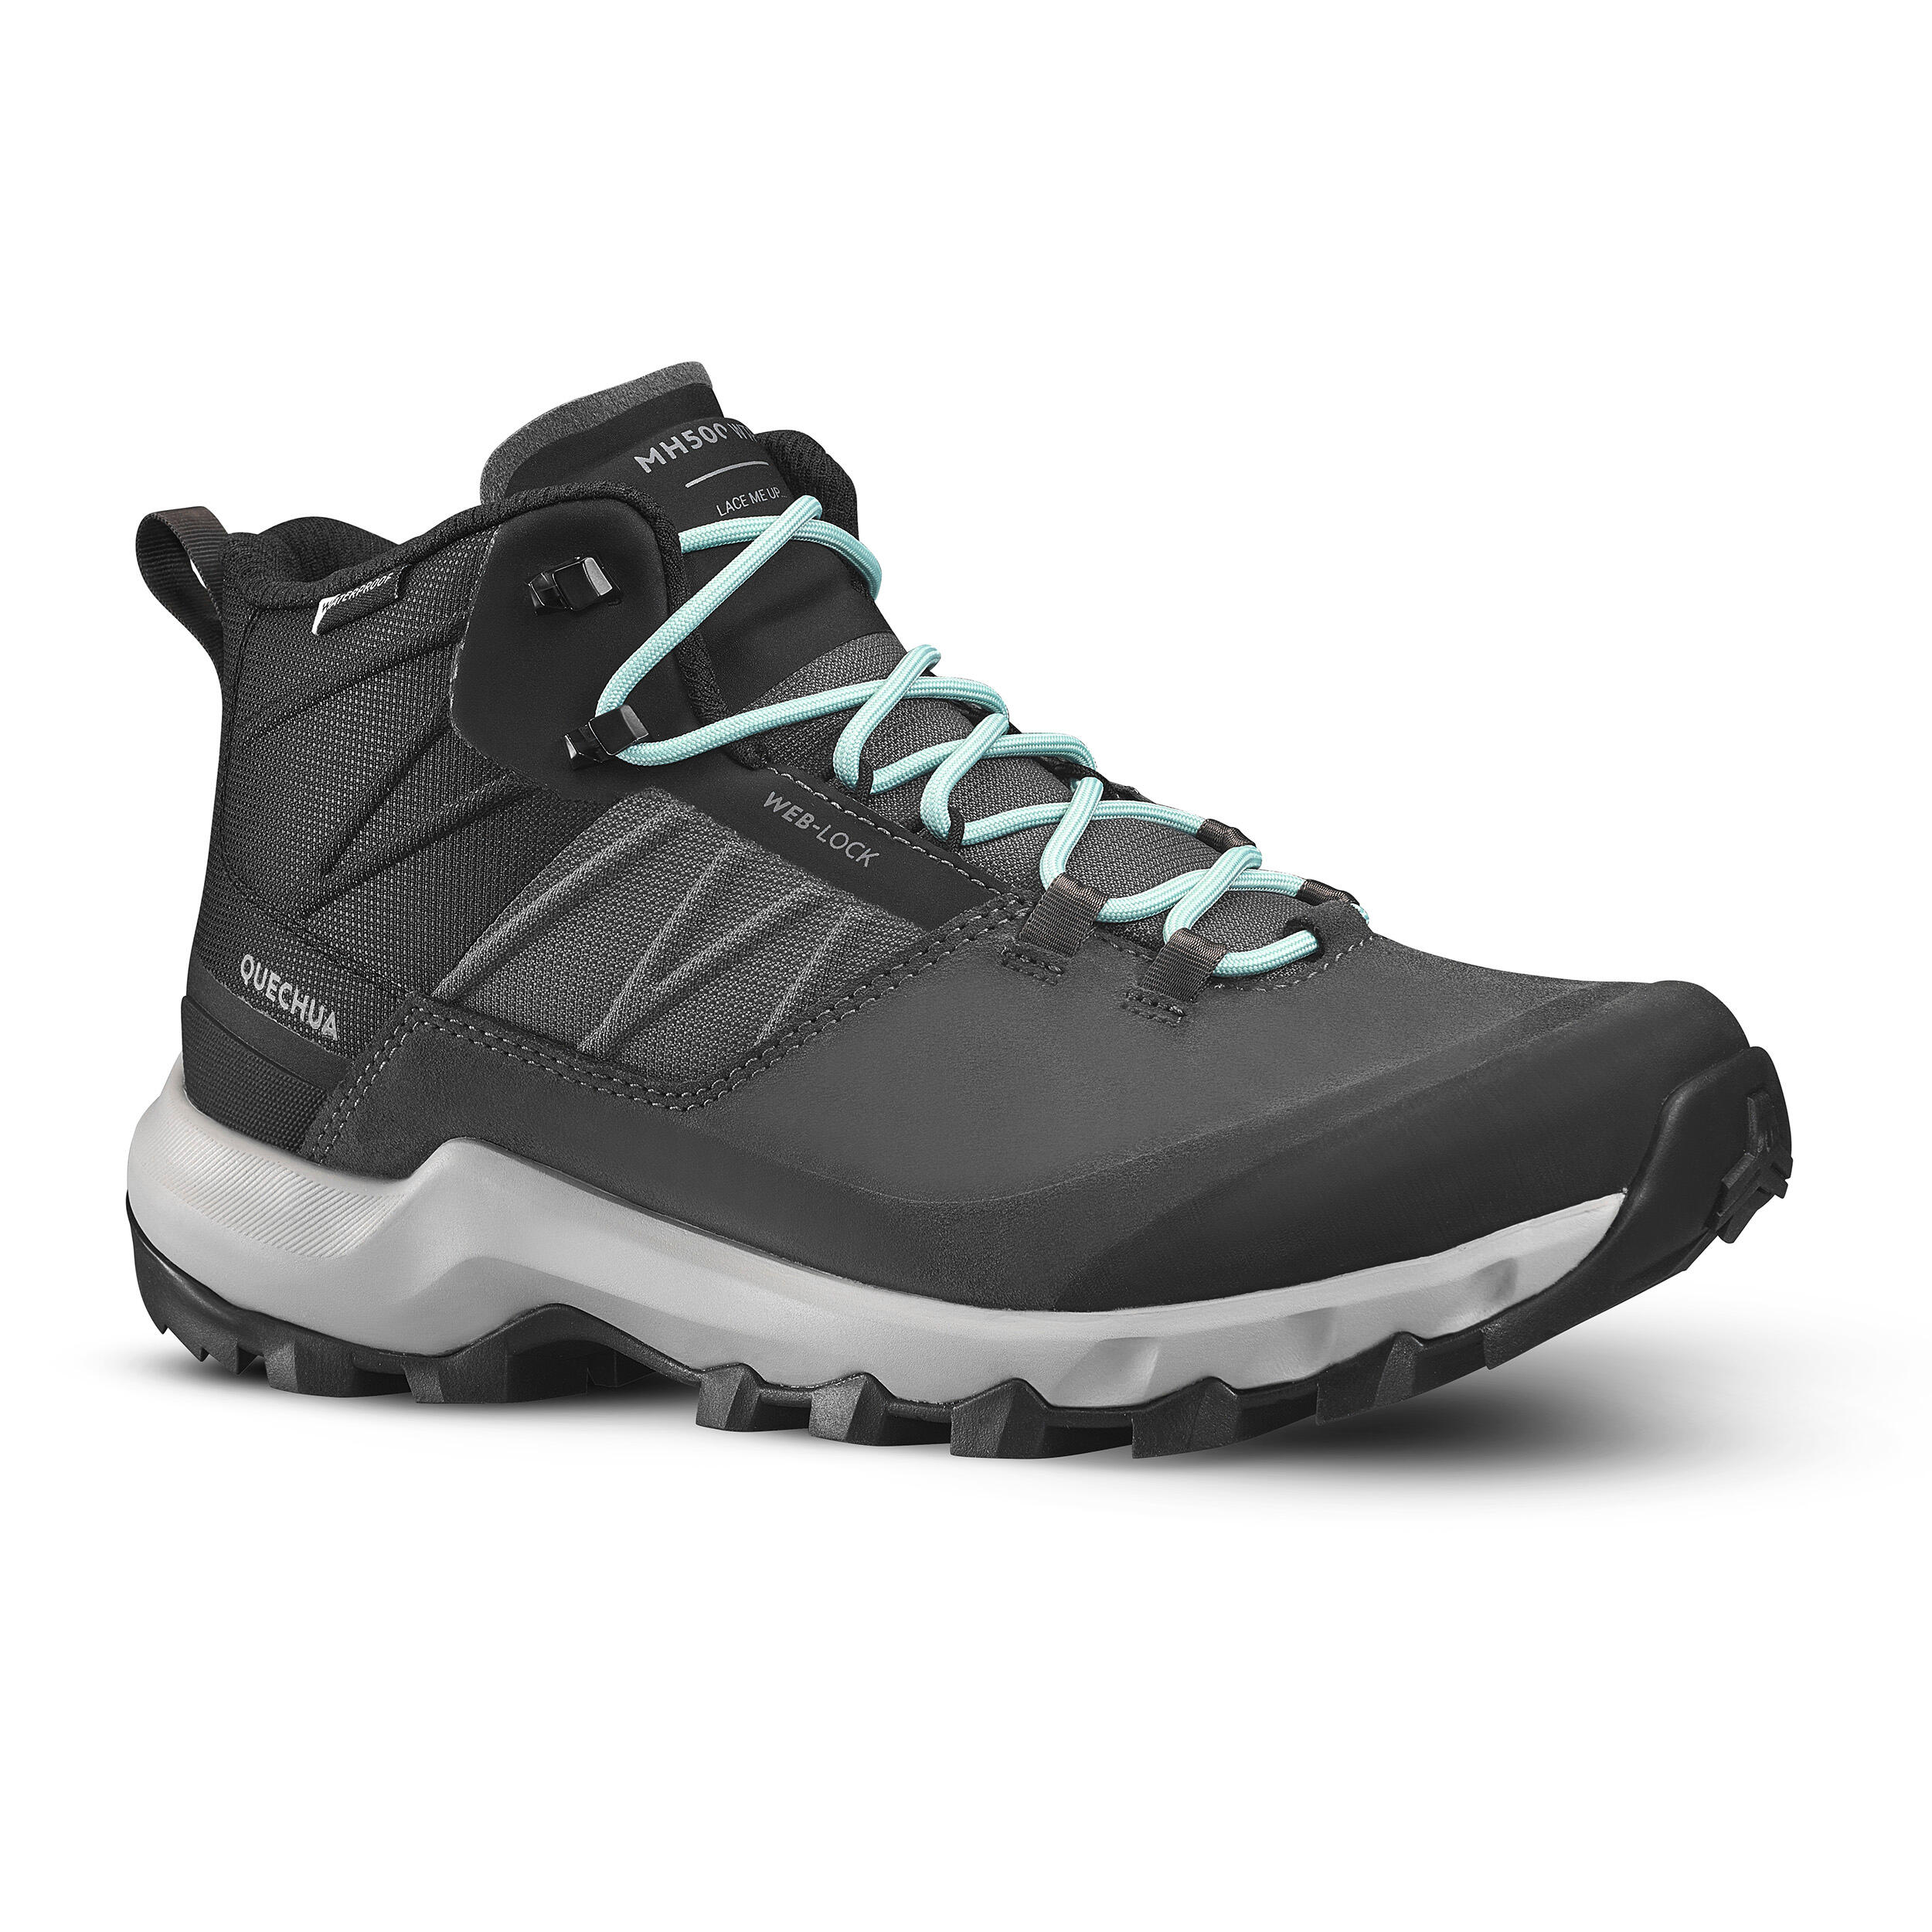 Decathlon Women Hiking Shoes (Waterproof) - Quechua